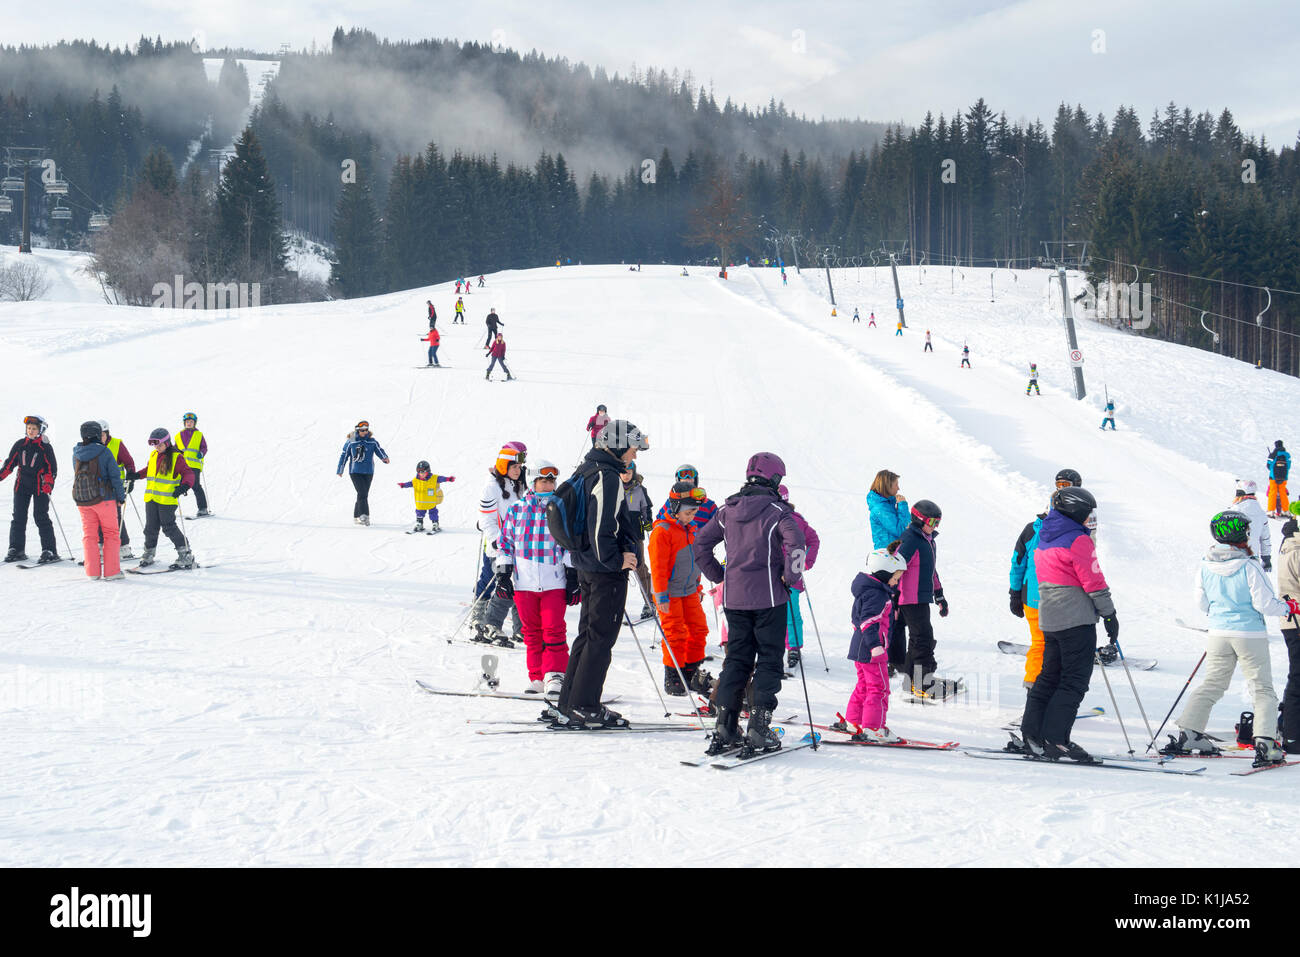 Salzbourg, Autriche - 26 janvier 2016 : Les gens commencent à être en ligne pour le ski de haut de Alpes, Flachau, Autriche Salzbourg . Banque D'Images